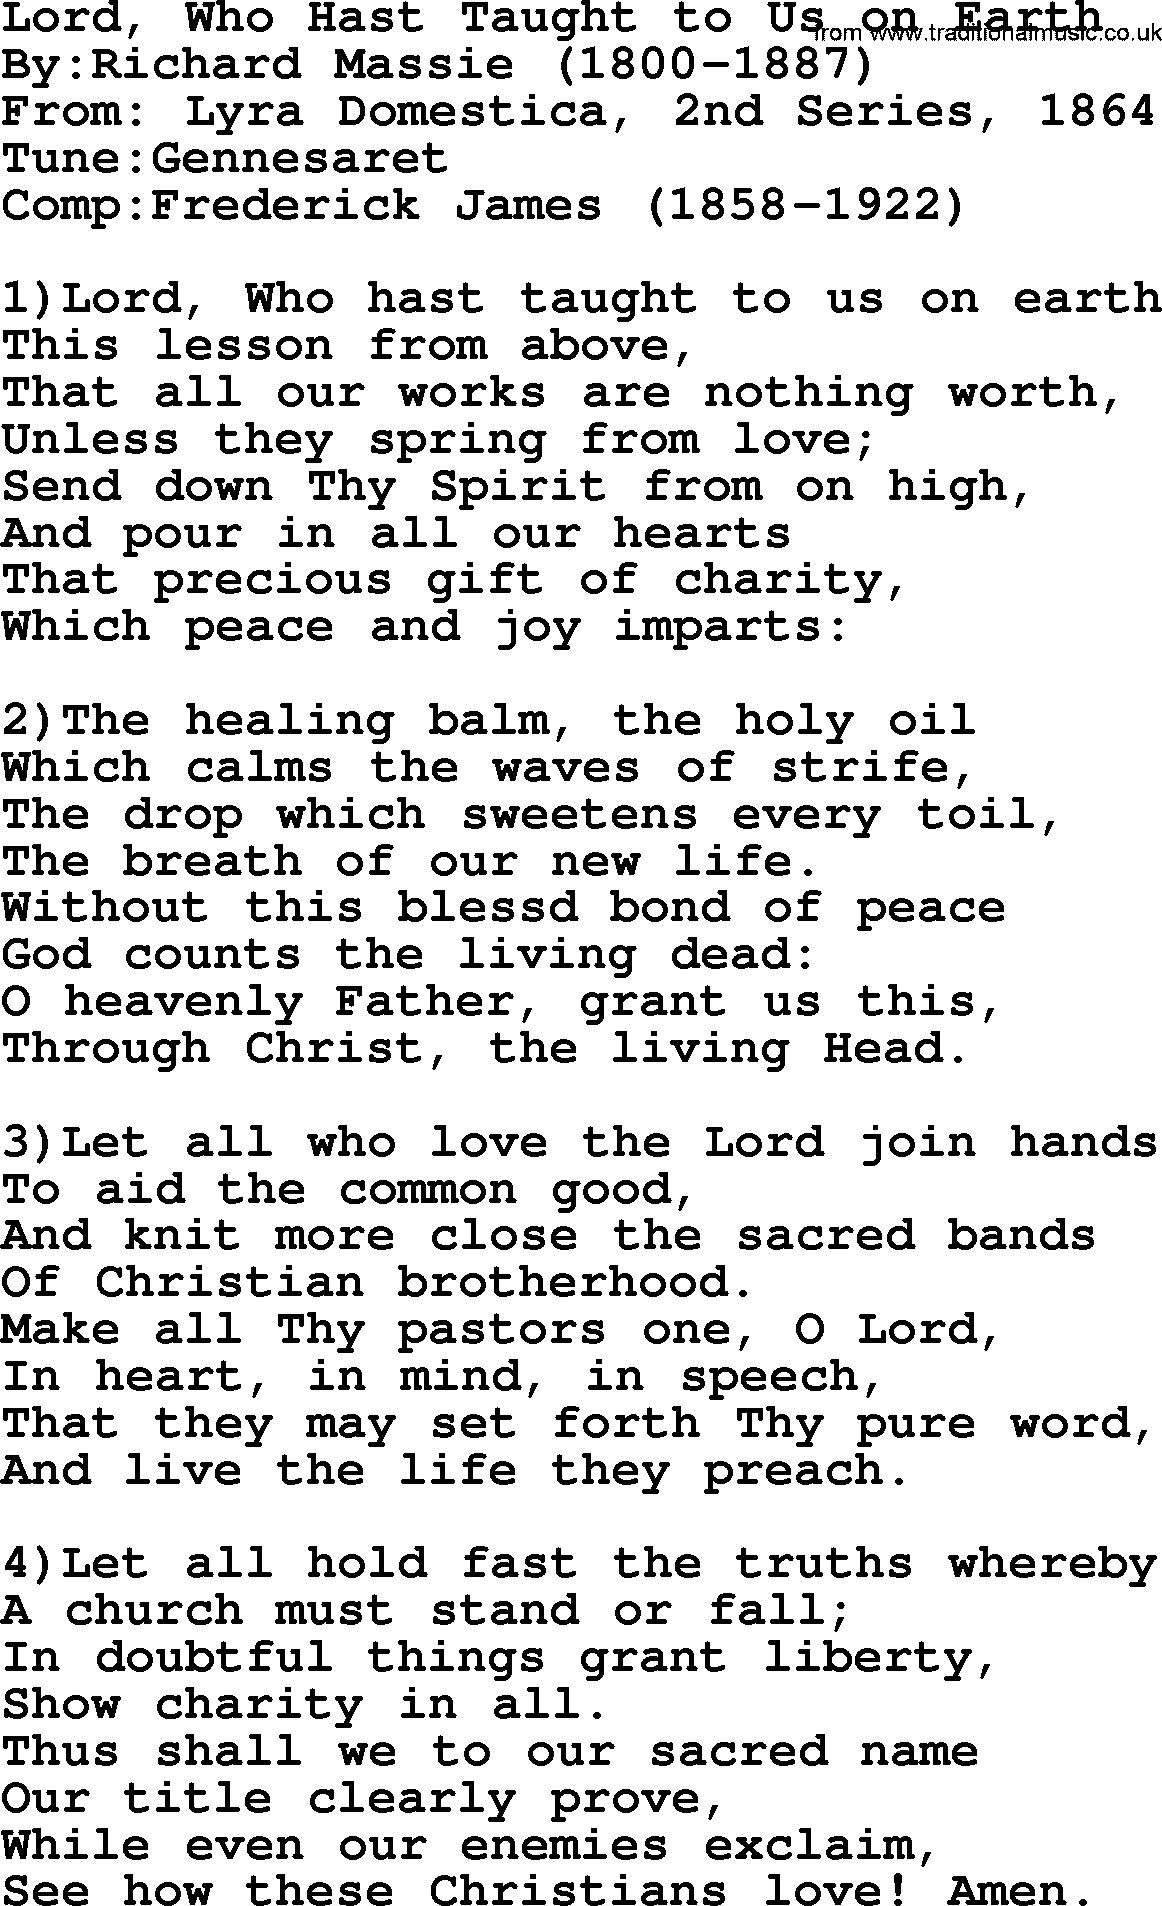 Methodist Hymn: Lord, Who Hast Taught To Us On Earth, lyrics